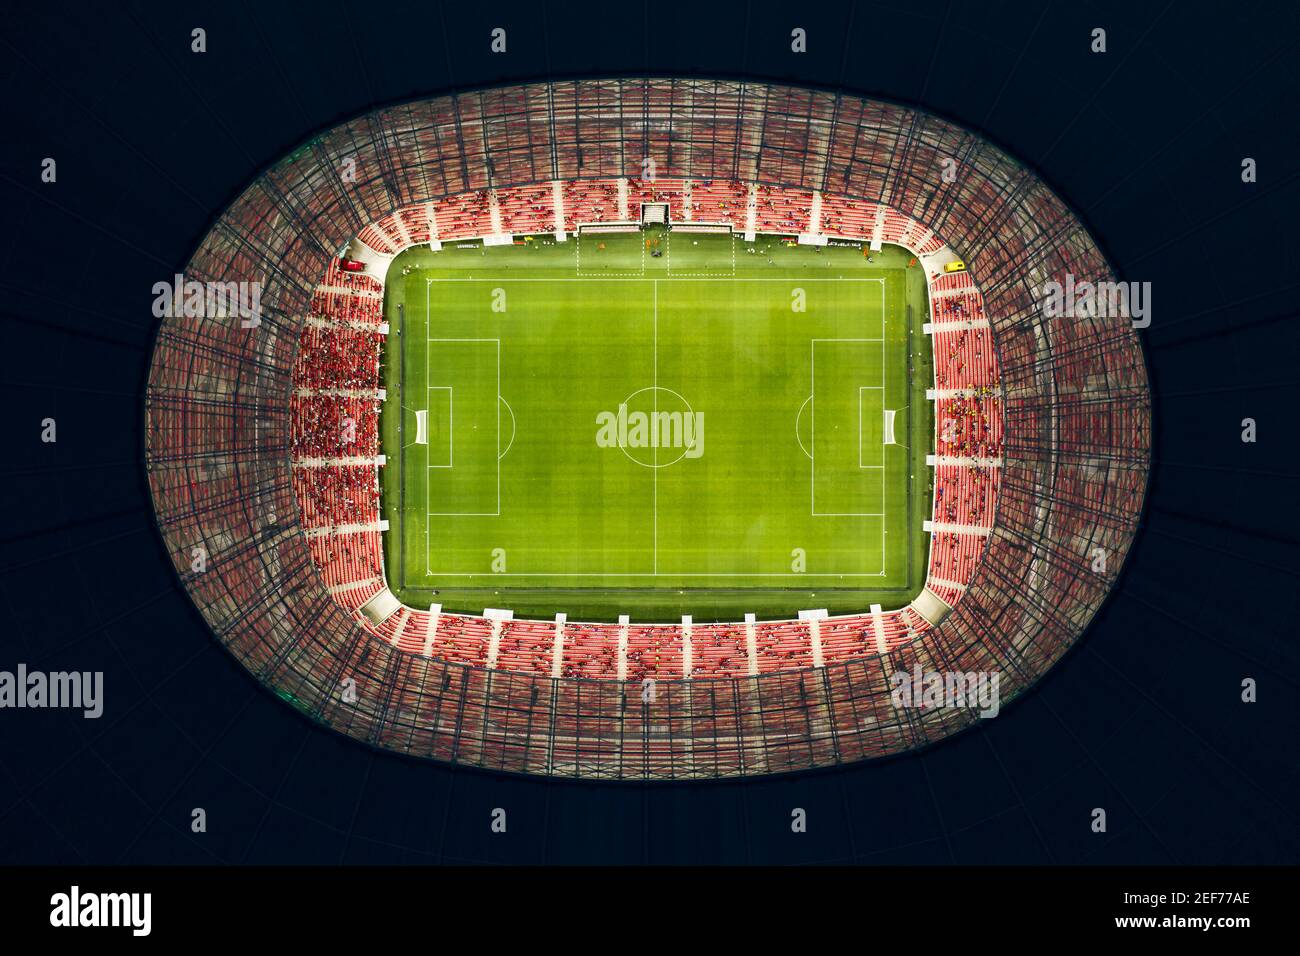 Luftbild über die Puskas Arena in Budapest Ungarn. Austragungsort für mehrere Spiele im Jahr 2021 für Champions League Stockfoto